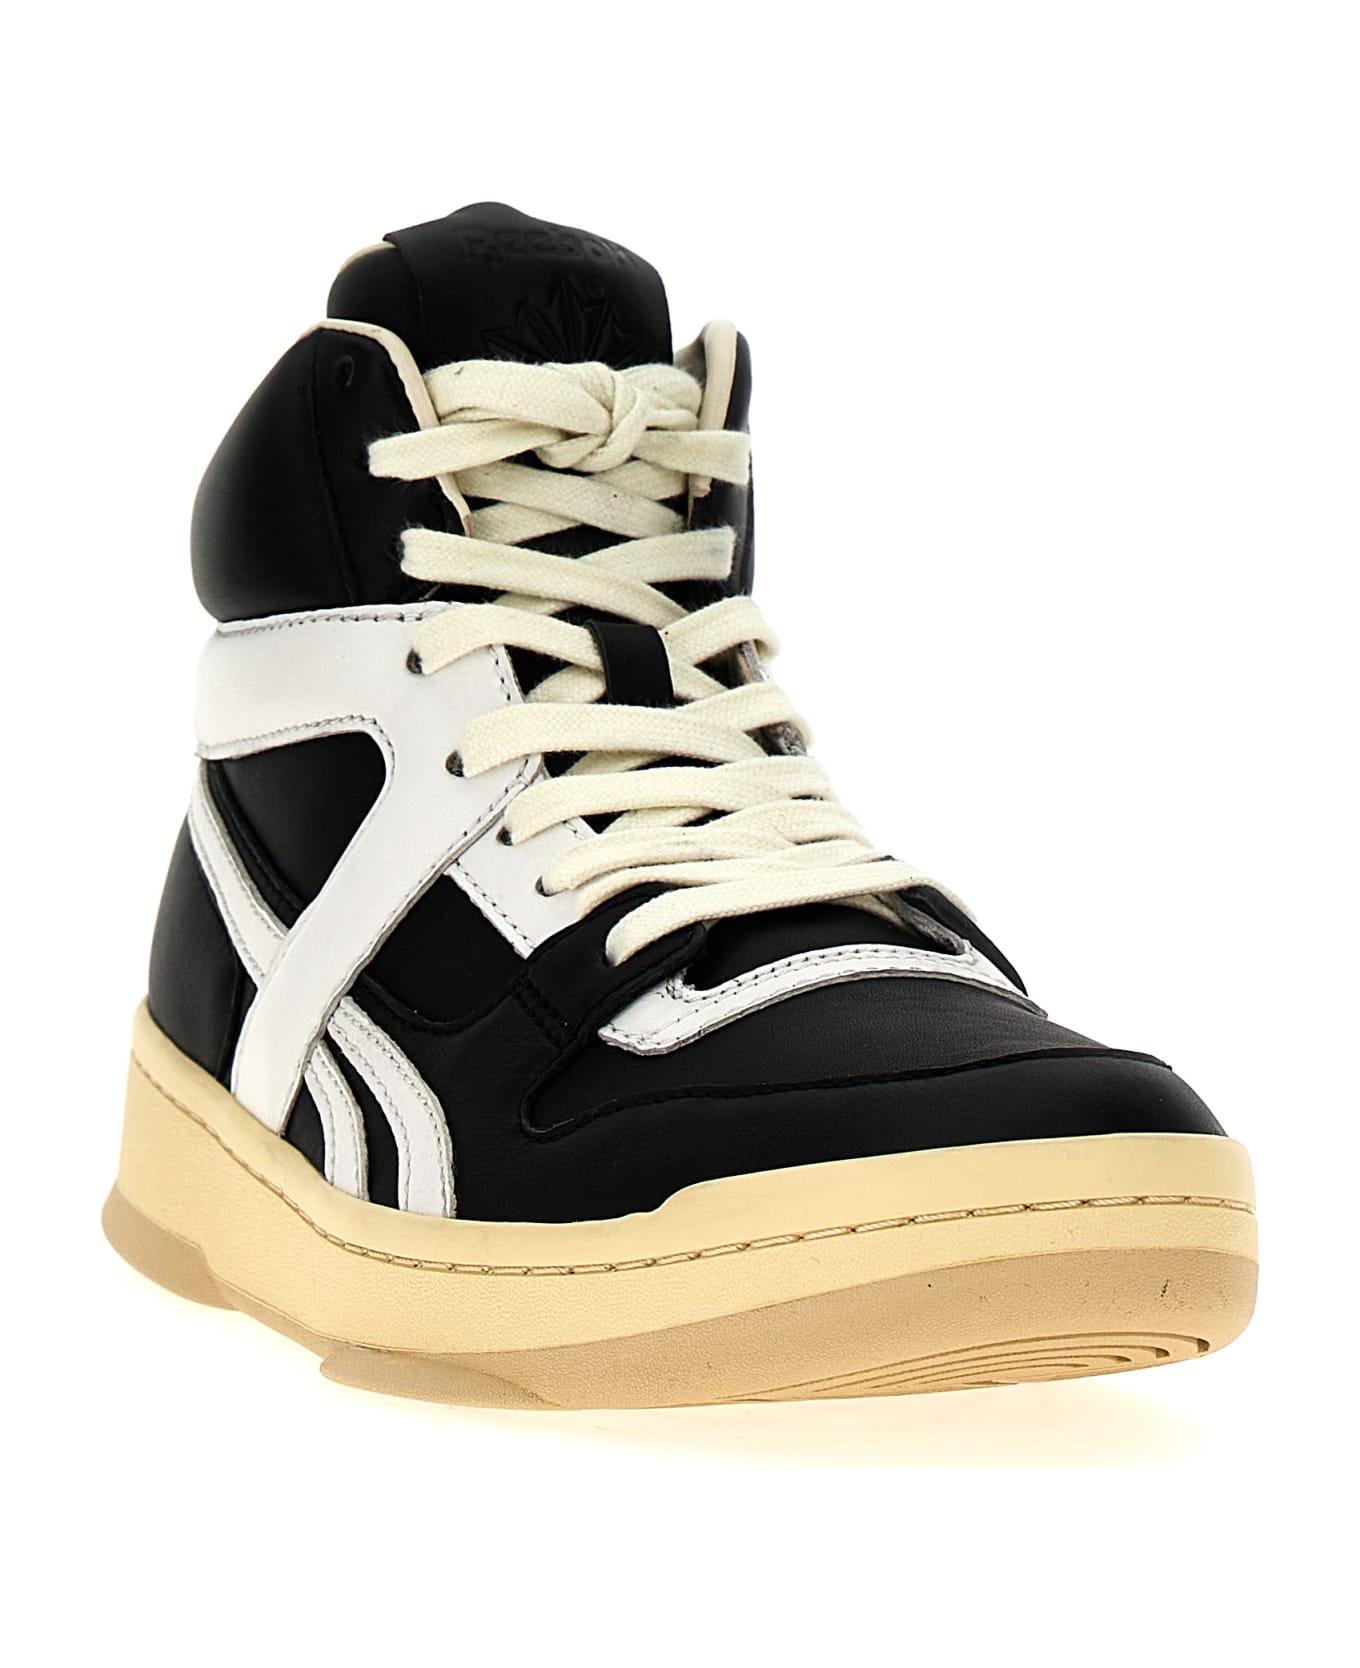 Reebok 'bb5600' Sneakers - White/Black